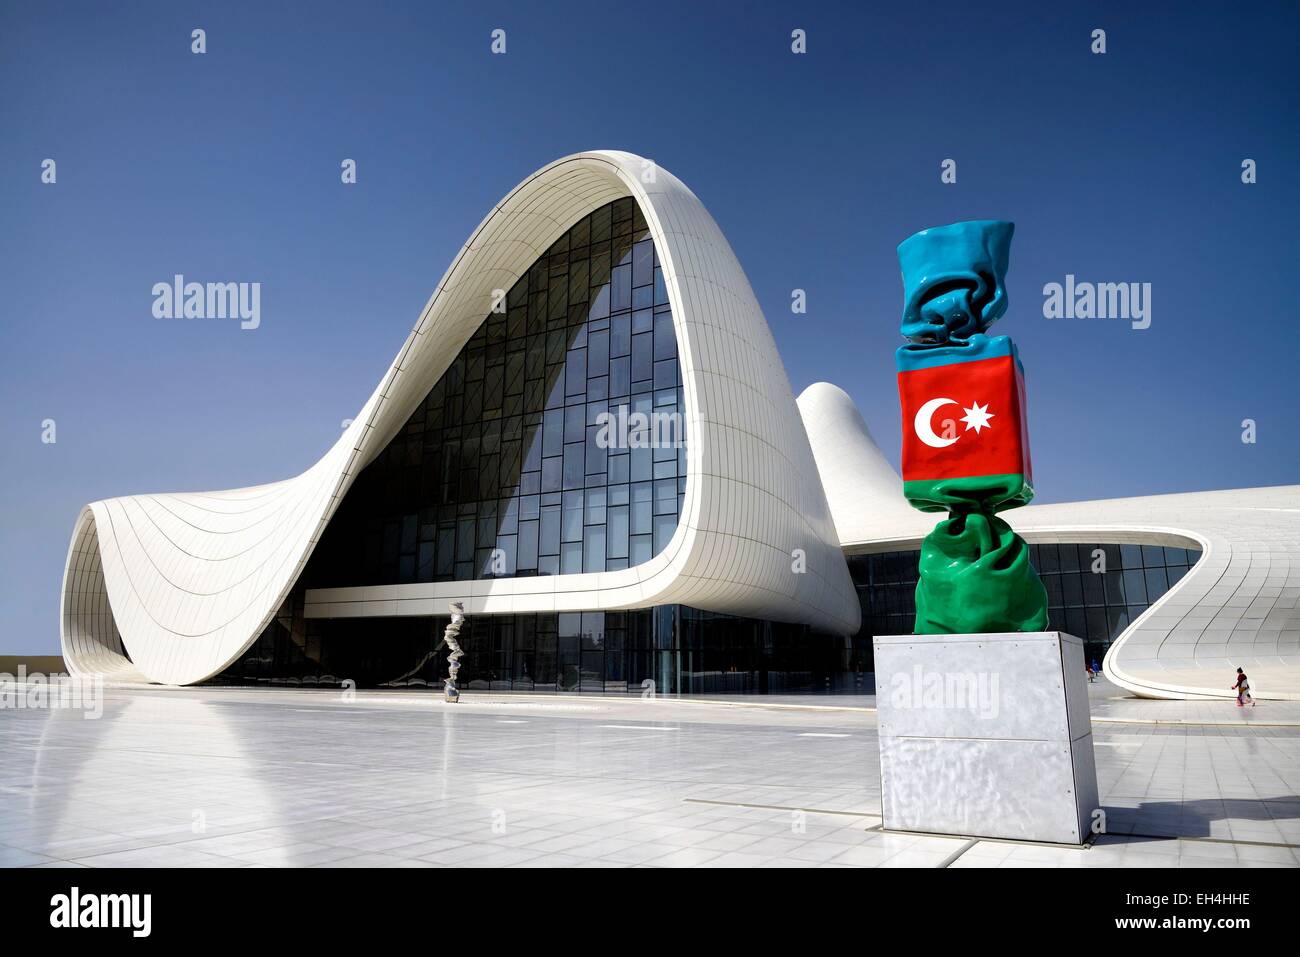 L'Azerbaïdjan, Bakou Heydar Aliyev, centre culturel monument futuriste conçu par l'architecte Zaha Hadid et la sculpture du drapeau national de l'Azerbaïdjan comme bonbons figure par l'artiste français Laurence Jenkell Banque D'Images